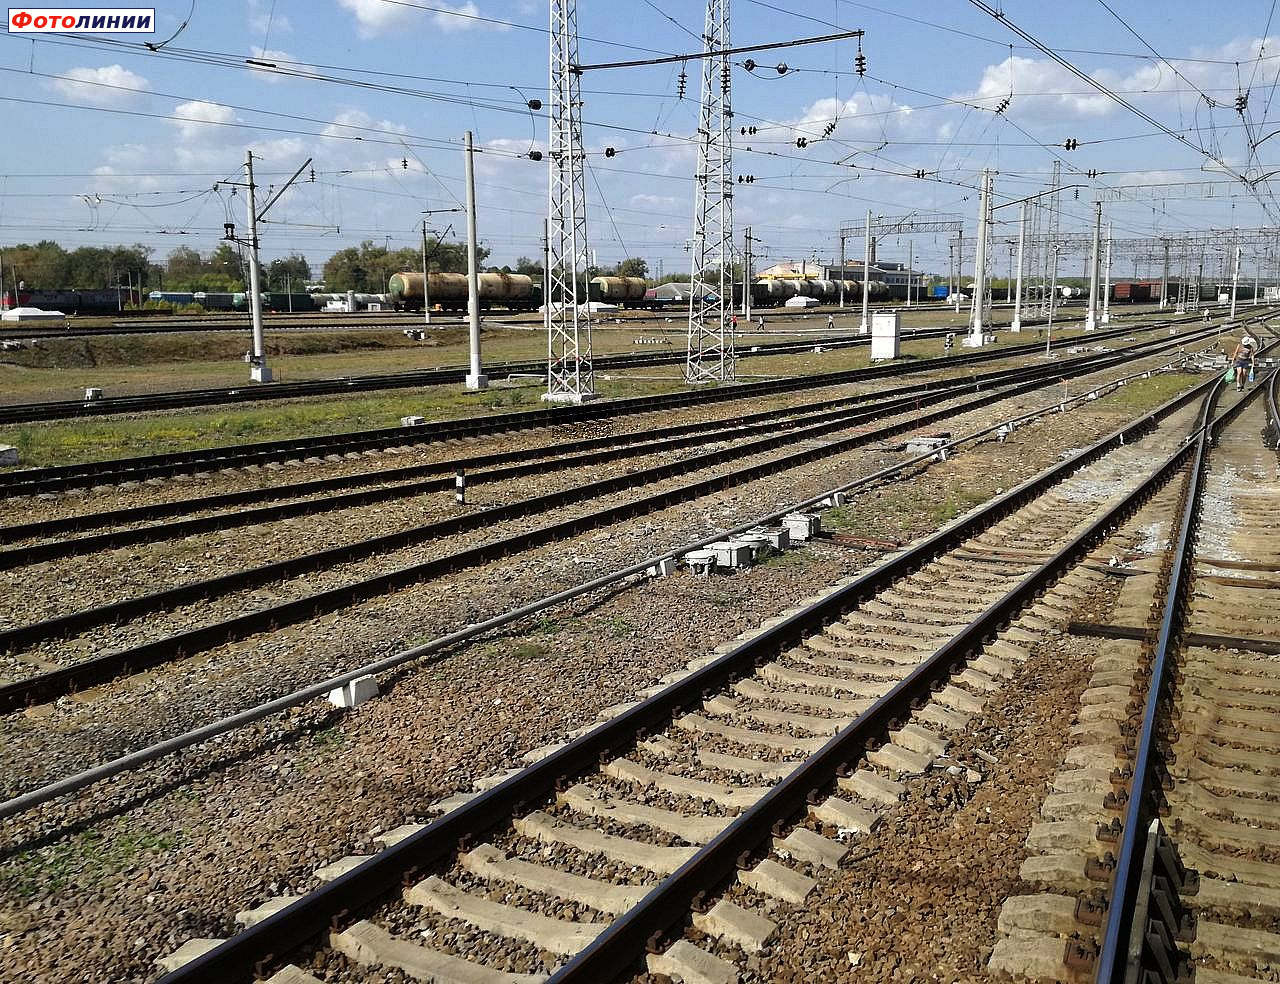 Пути южной части станции со стороны восточной колеи Узуновского направления, вид в сторону пассажирских платформ